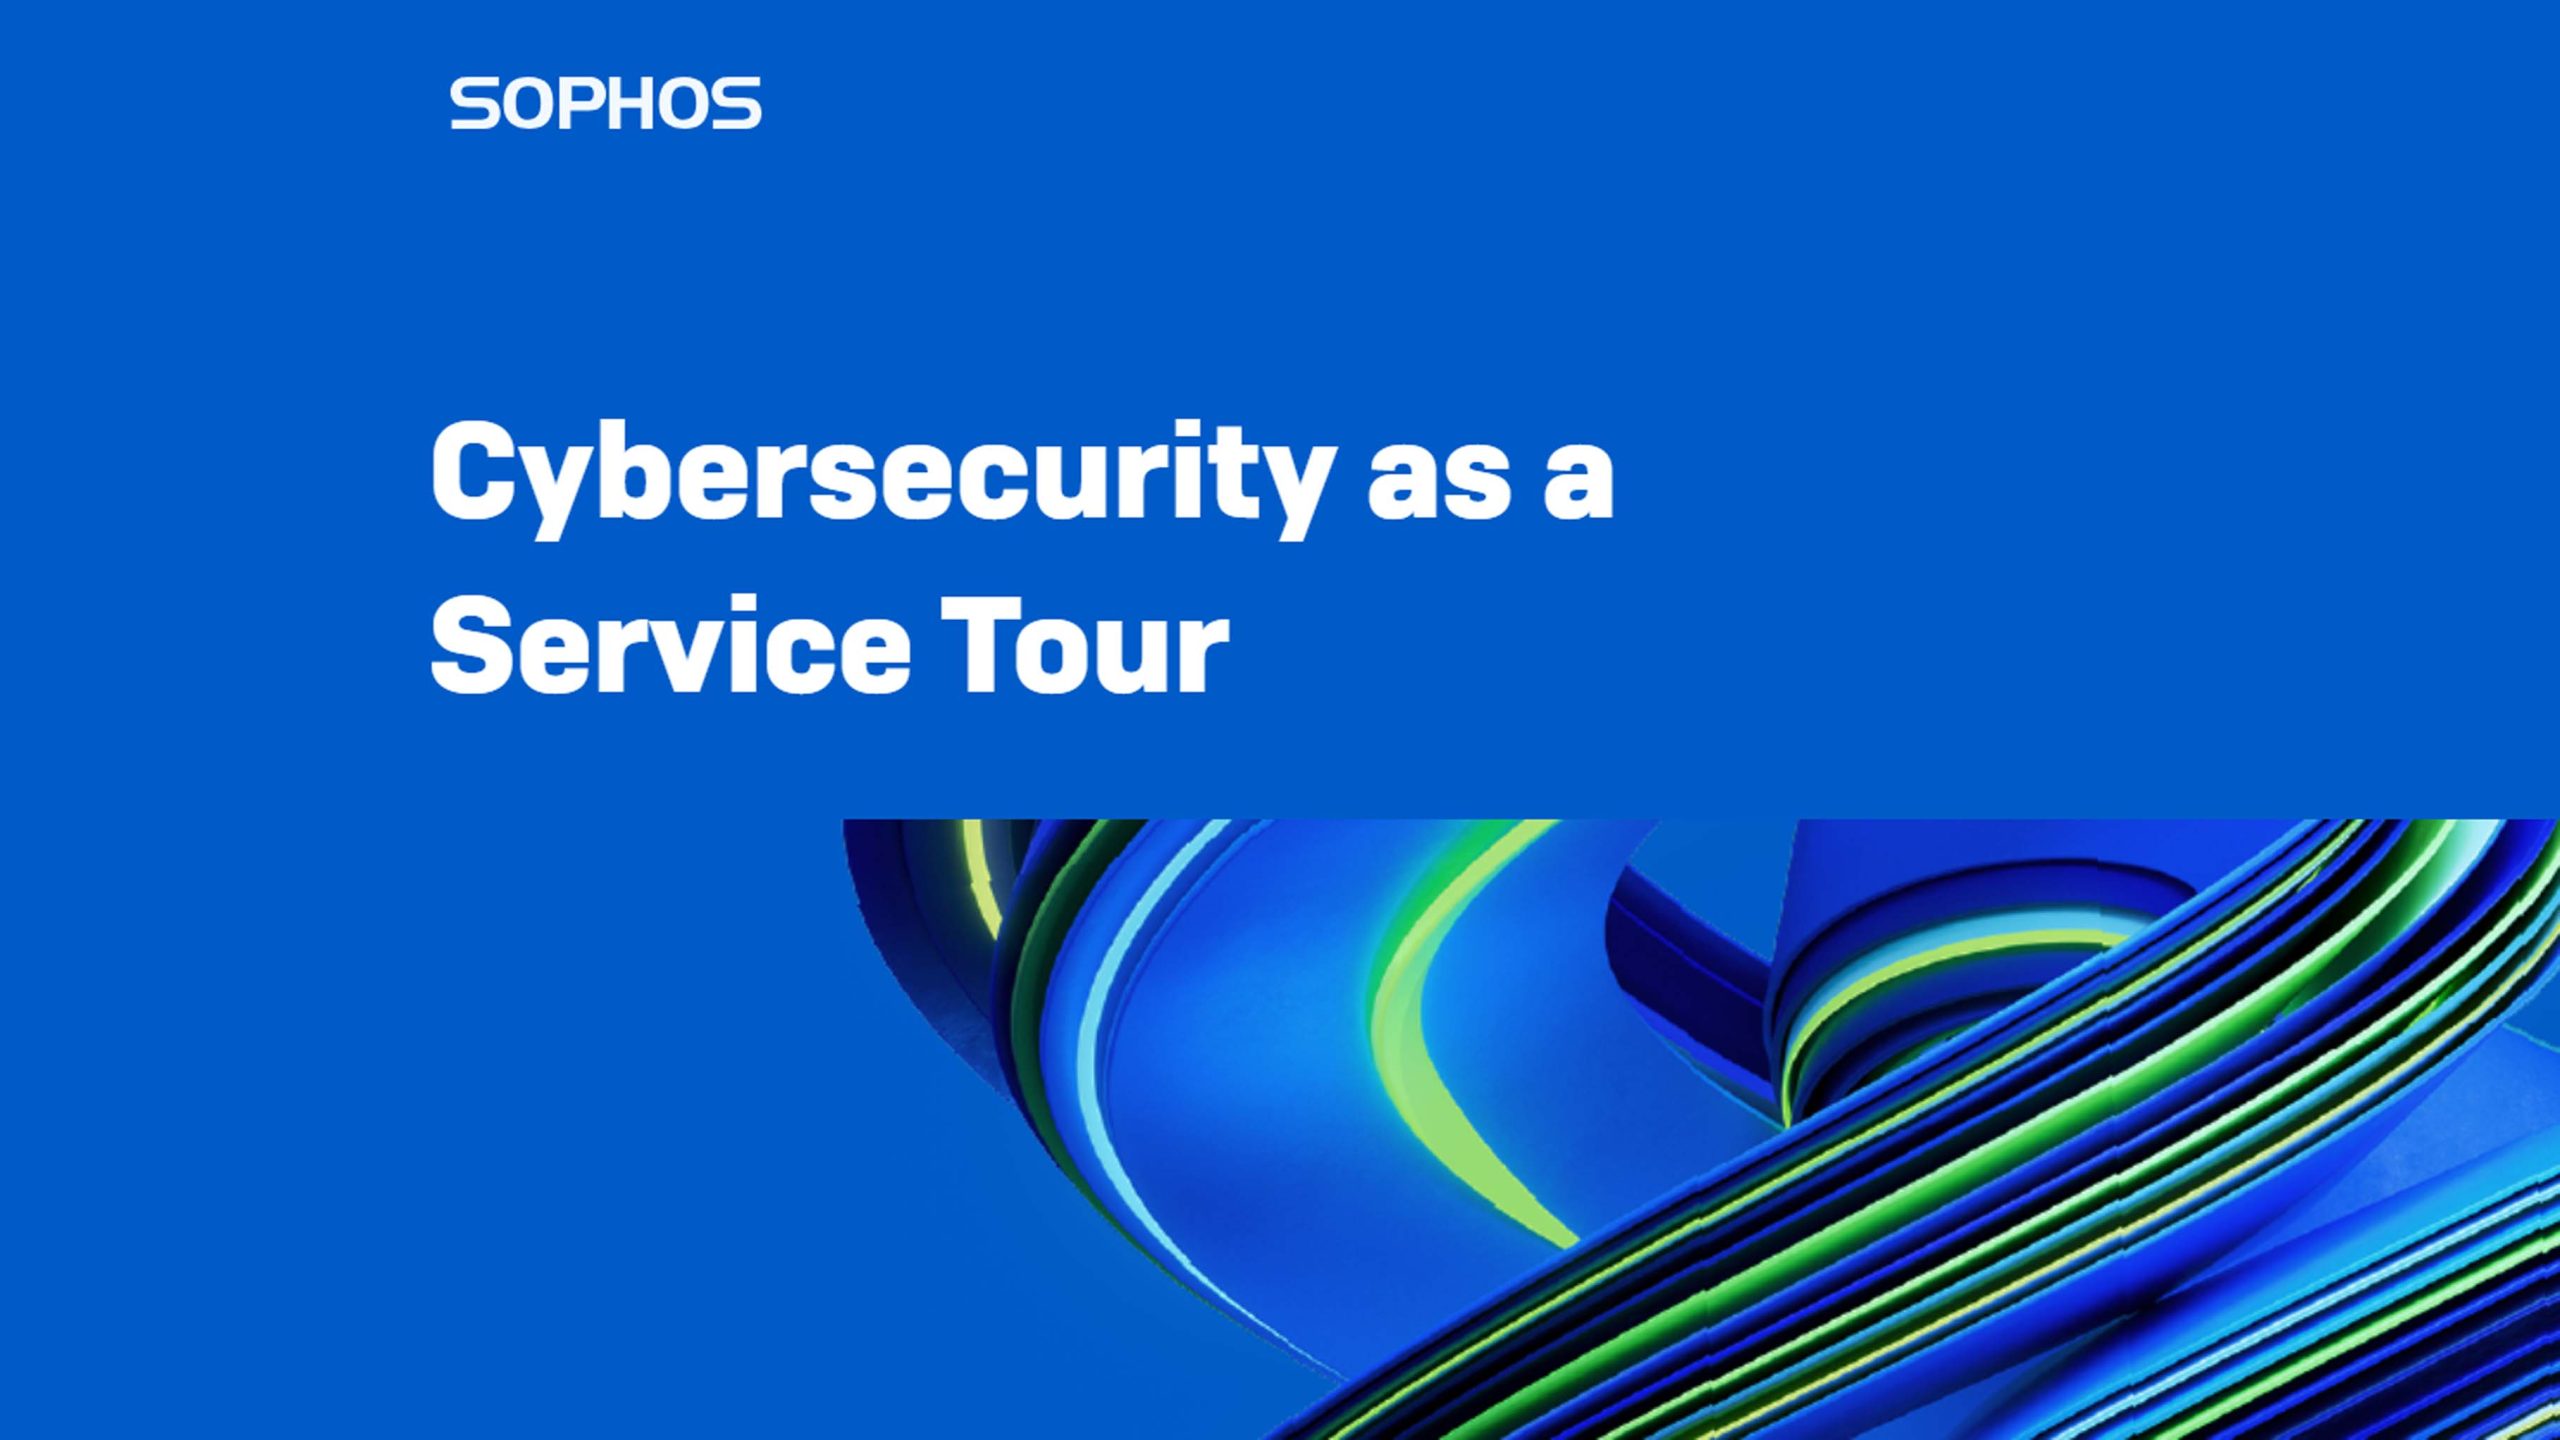 Sophos Security as a Service Tour